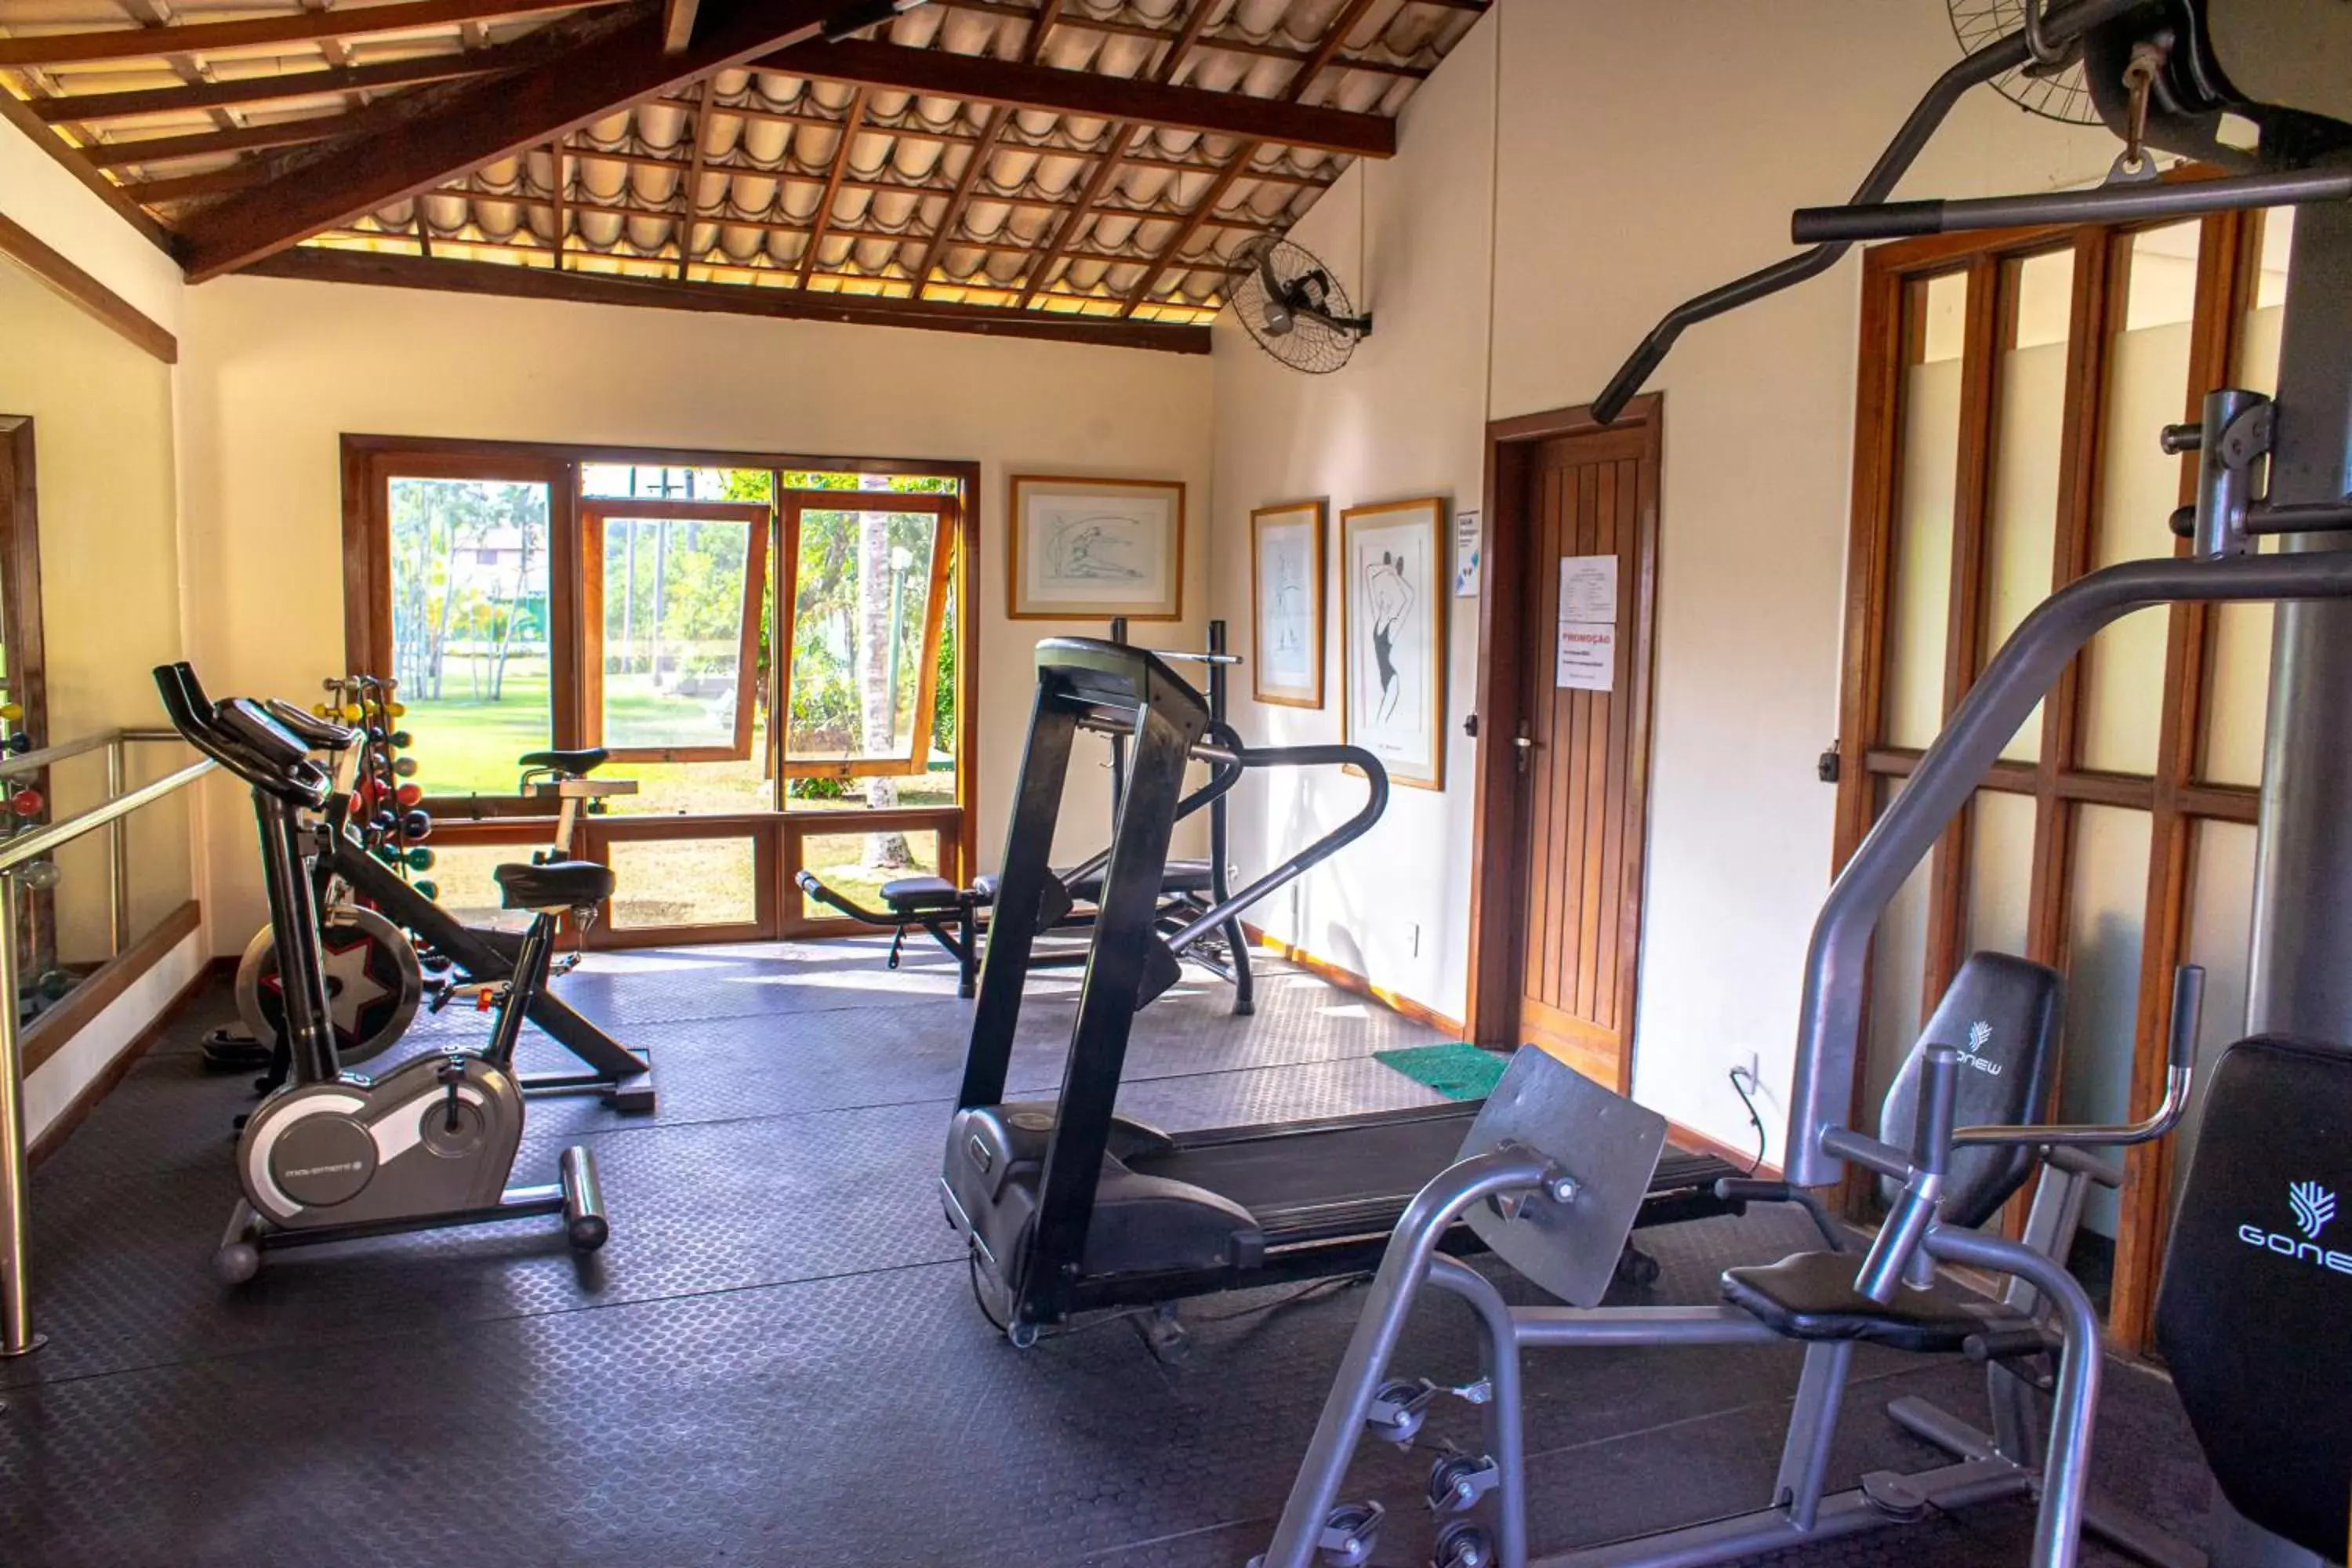 Spa and wellness centre/facilities, Fitness Center/Facilities in Portobello Praia